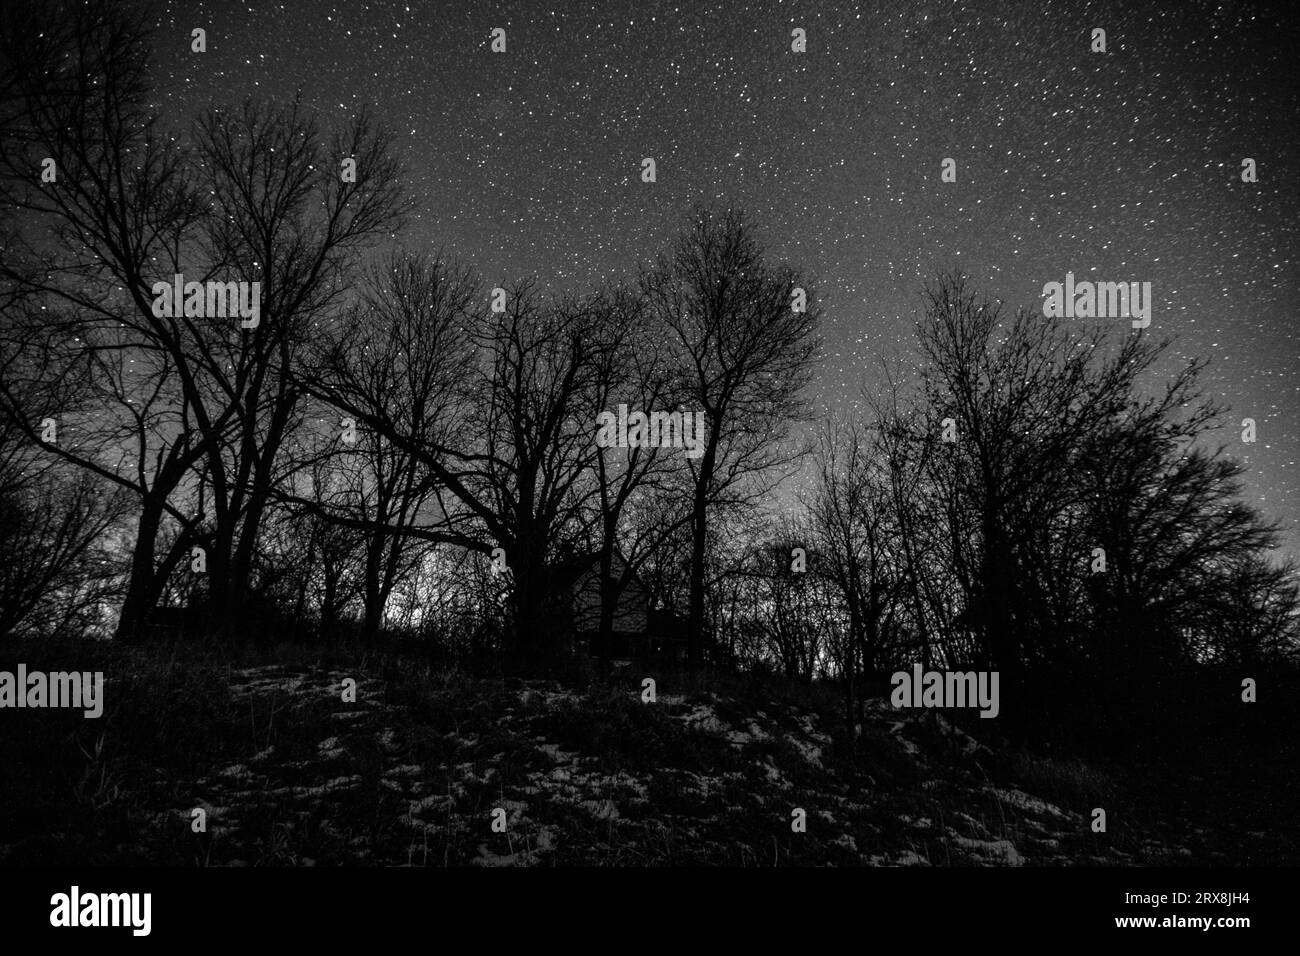 Maison hantée cachée dans un bosquet d'arbres sous un ciel étoilé rendu en noir et blanc monochromatique scintillant. Banque D'Images